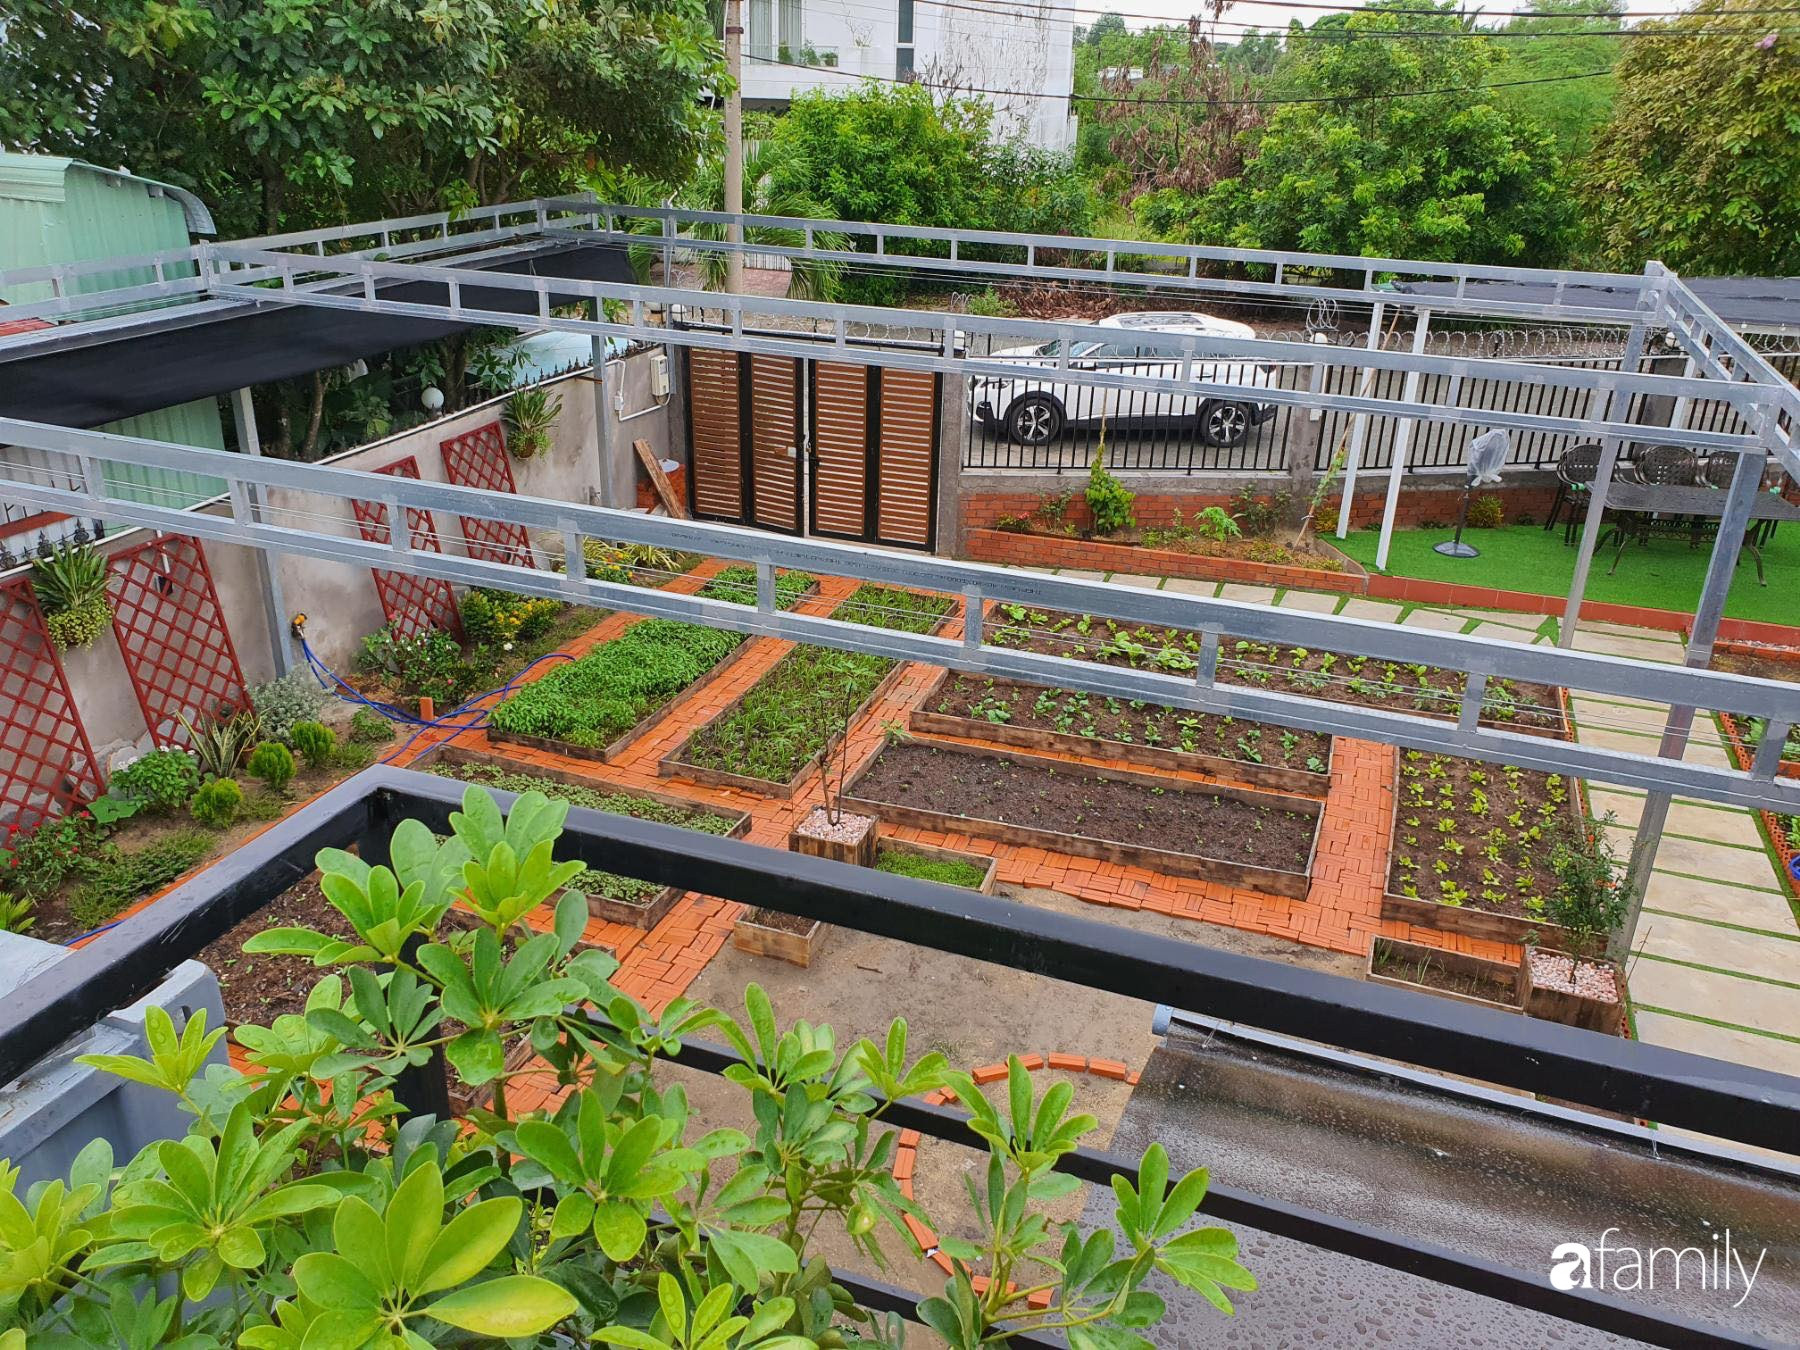 Con gái chi 500 triệu đồng xây nhà vườn container để bố về hưu thỏa mãn đam mê trồng rau ở Sài Gòn - Ảnh 6.